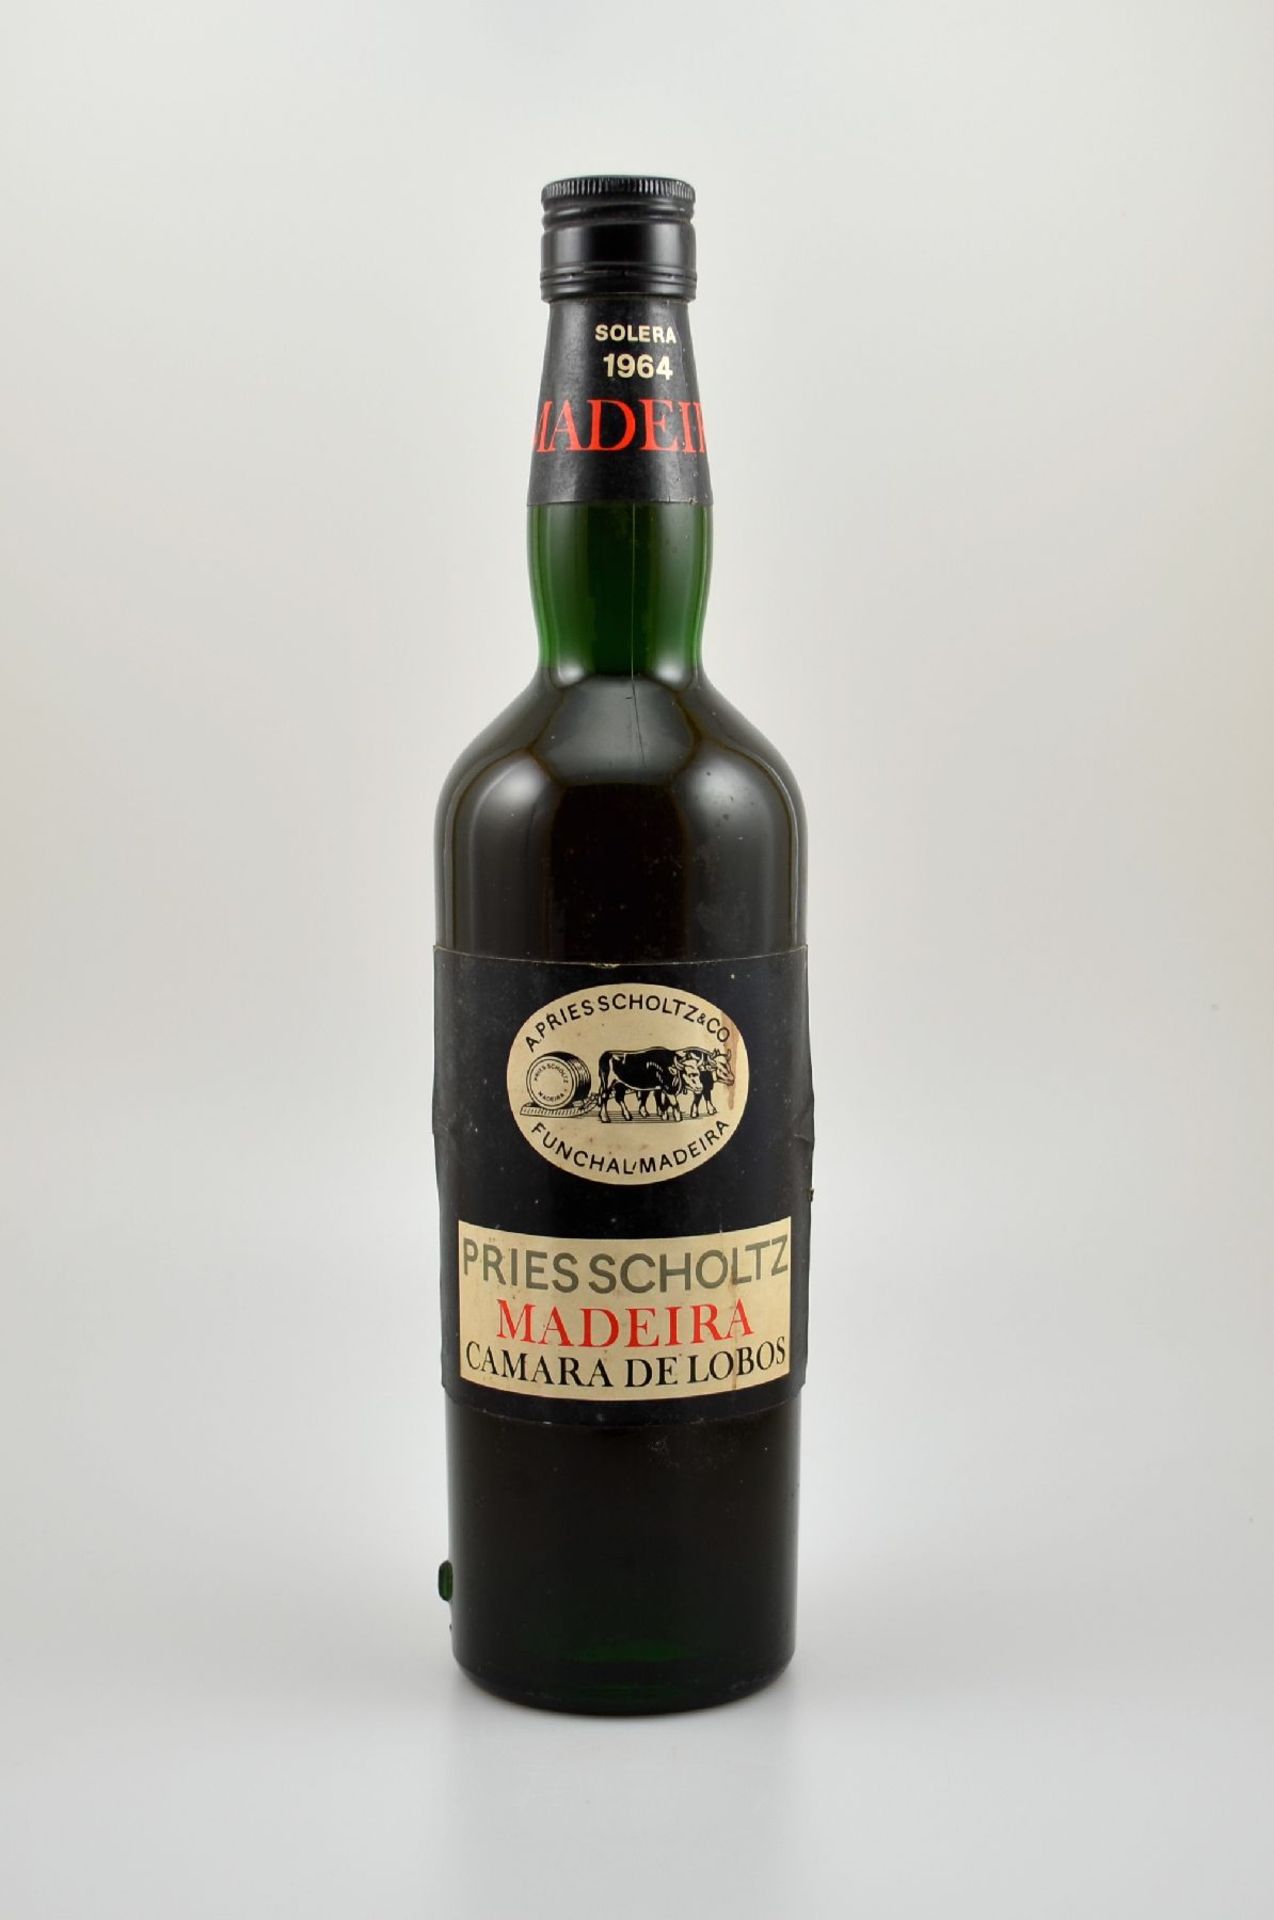 1 Flasche 1964 Madeira Solera, A. Pries Scholtz Madeira Camara de Lobos, importiert durch Bols-